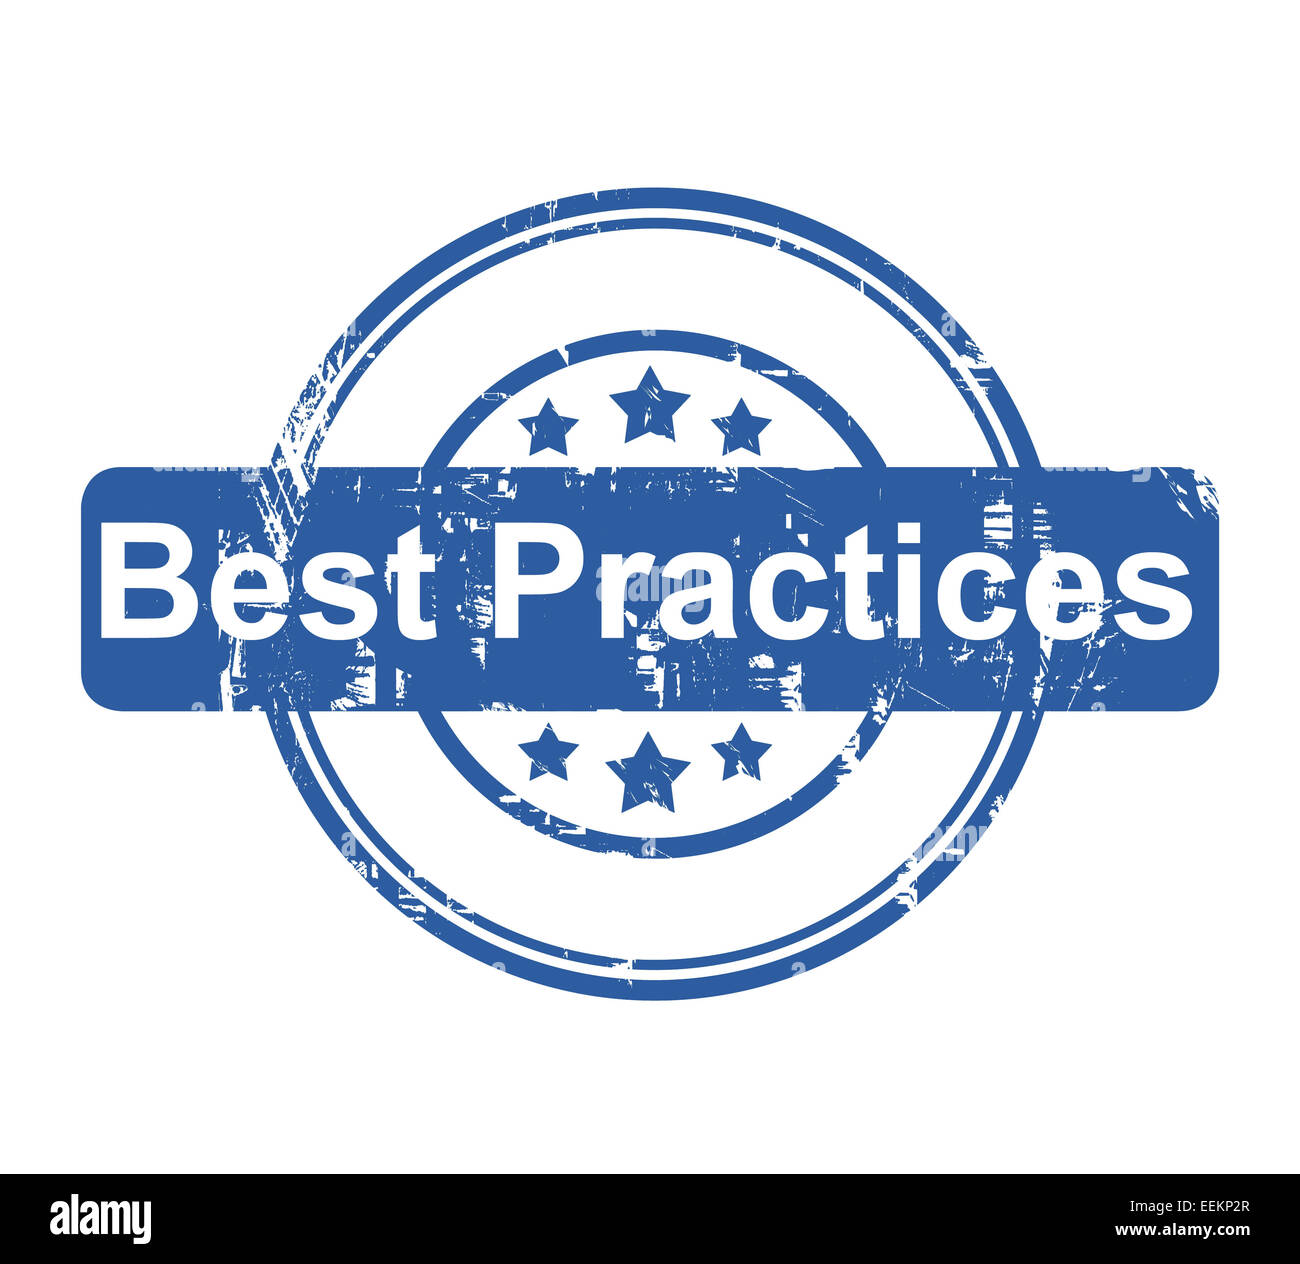 Best Practices Konzept Firmenstempel mit Sternen isoliert auf einem weißen Hintergrund. Stockfoto